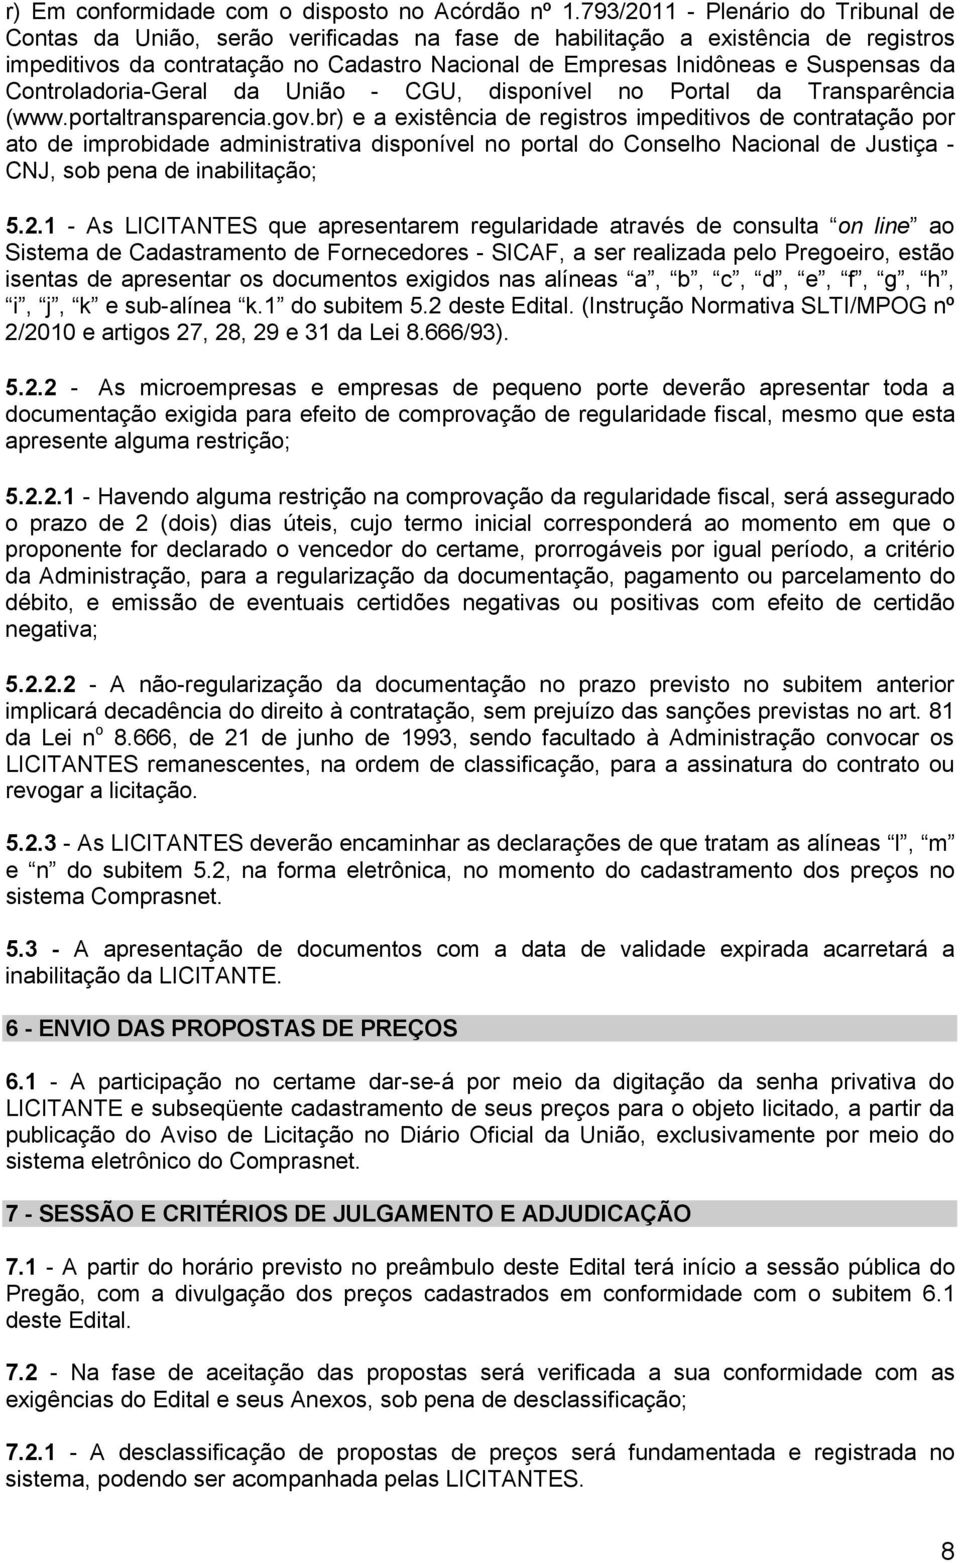 Suspensas da Controladoria-Geral da União - CGU, disponível no Portal da Transparência (www.portaltransparencia.gov.